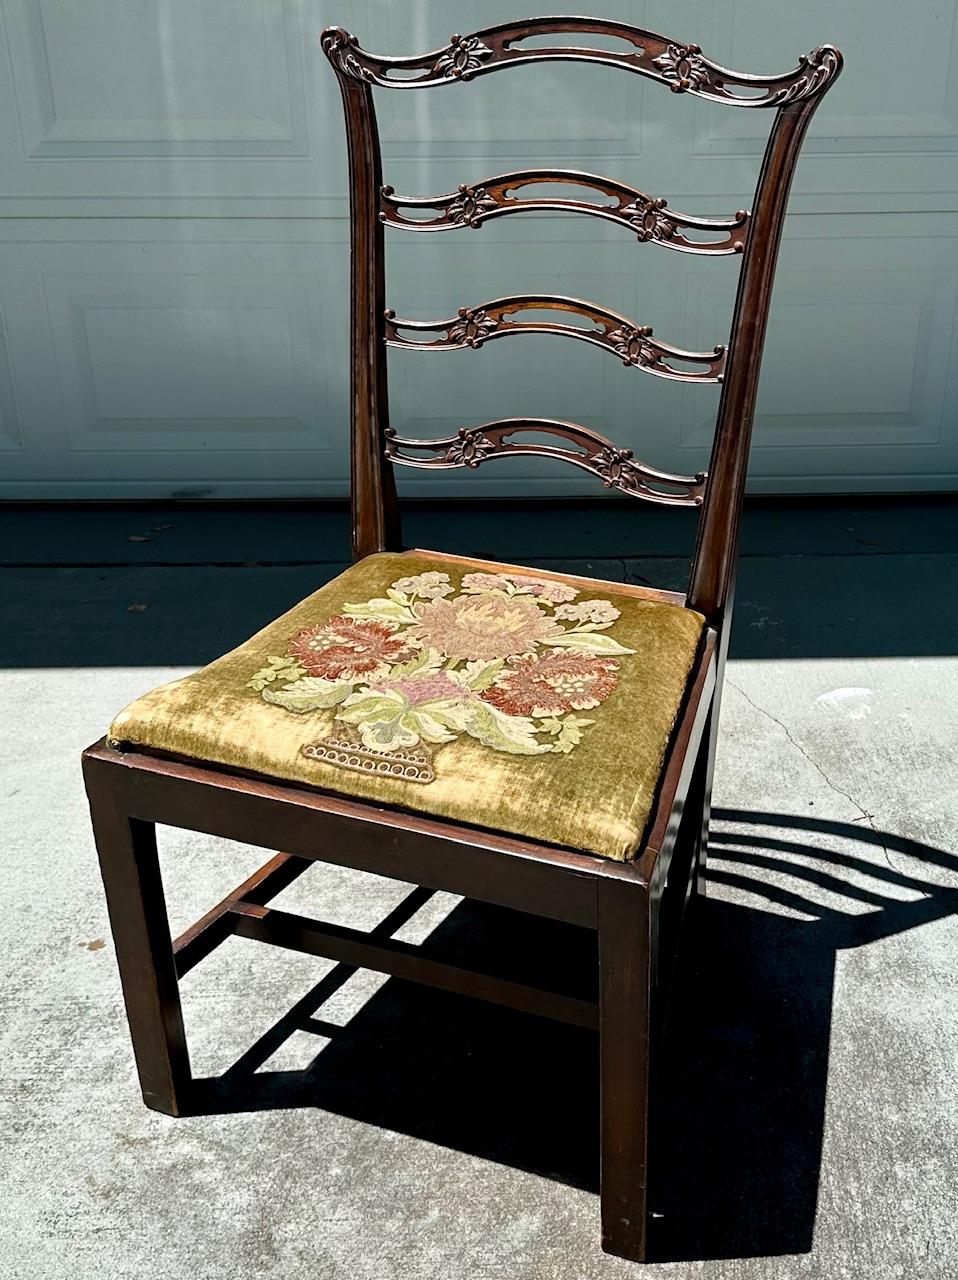 Chaise d'appoint de style Chippendale à dossier en ruban et assise brodée

Il s'agit d'une superbe chaise d'appoint Chippendale en acajou avec dossier en ruban et assise brodée.  Datant du 19e siècle, quatre entrelacs de rubans horizontaux percés